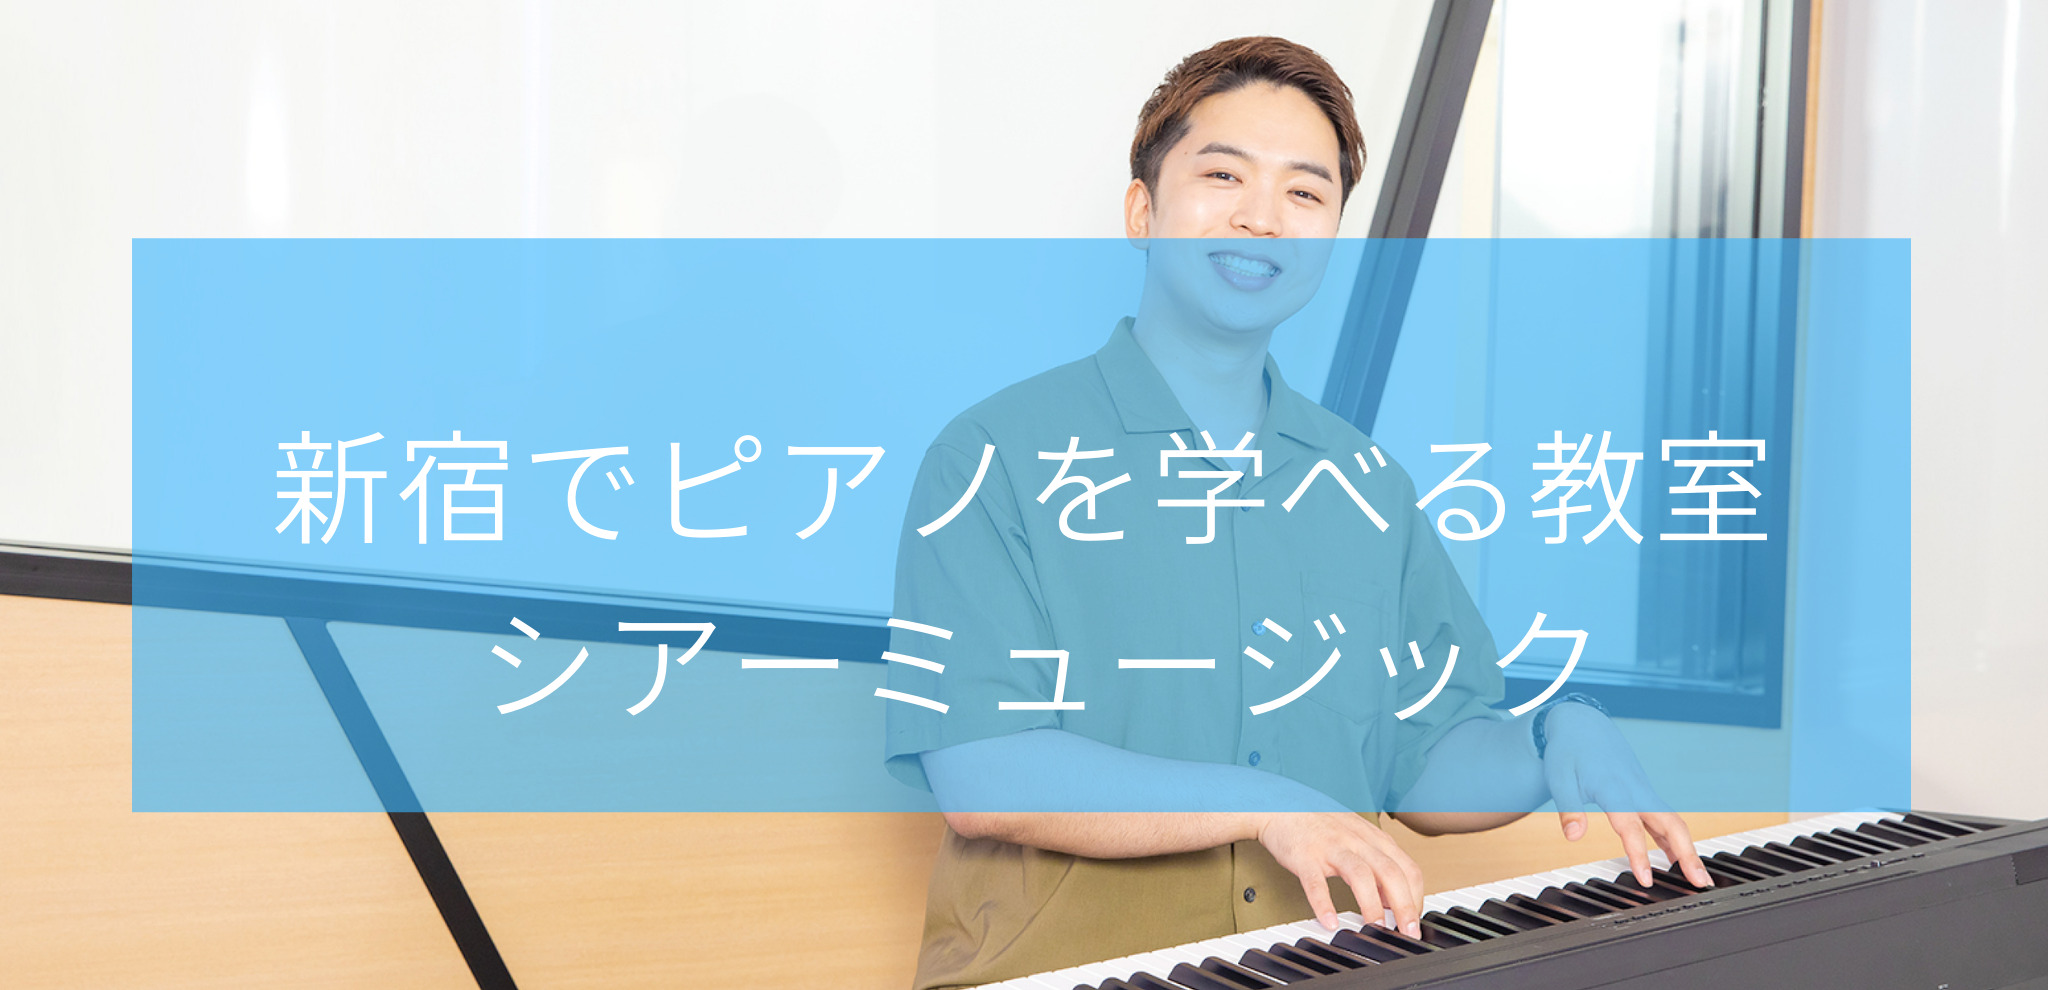 新宿でピアノを学べる教室シアーミュージック